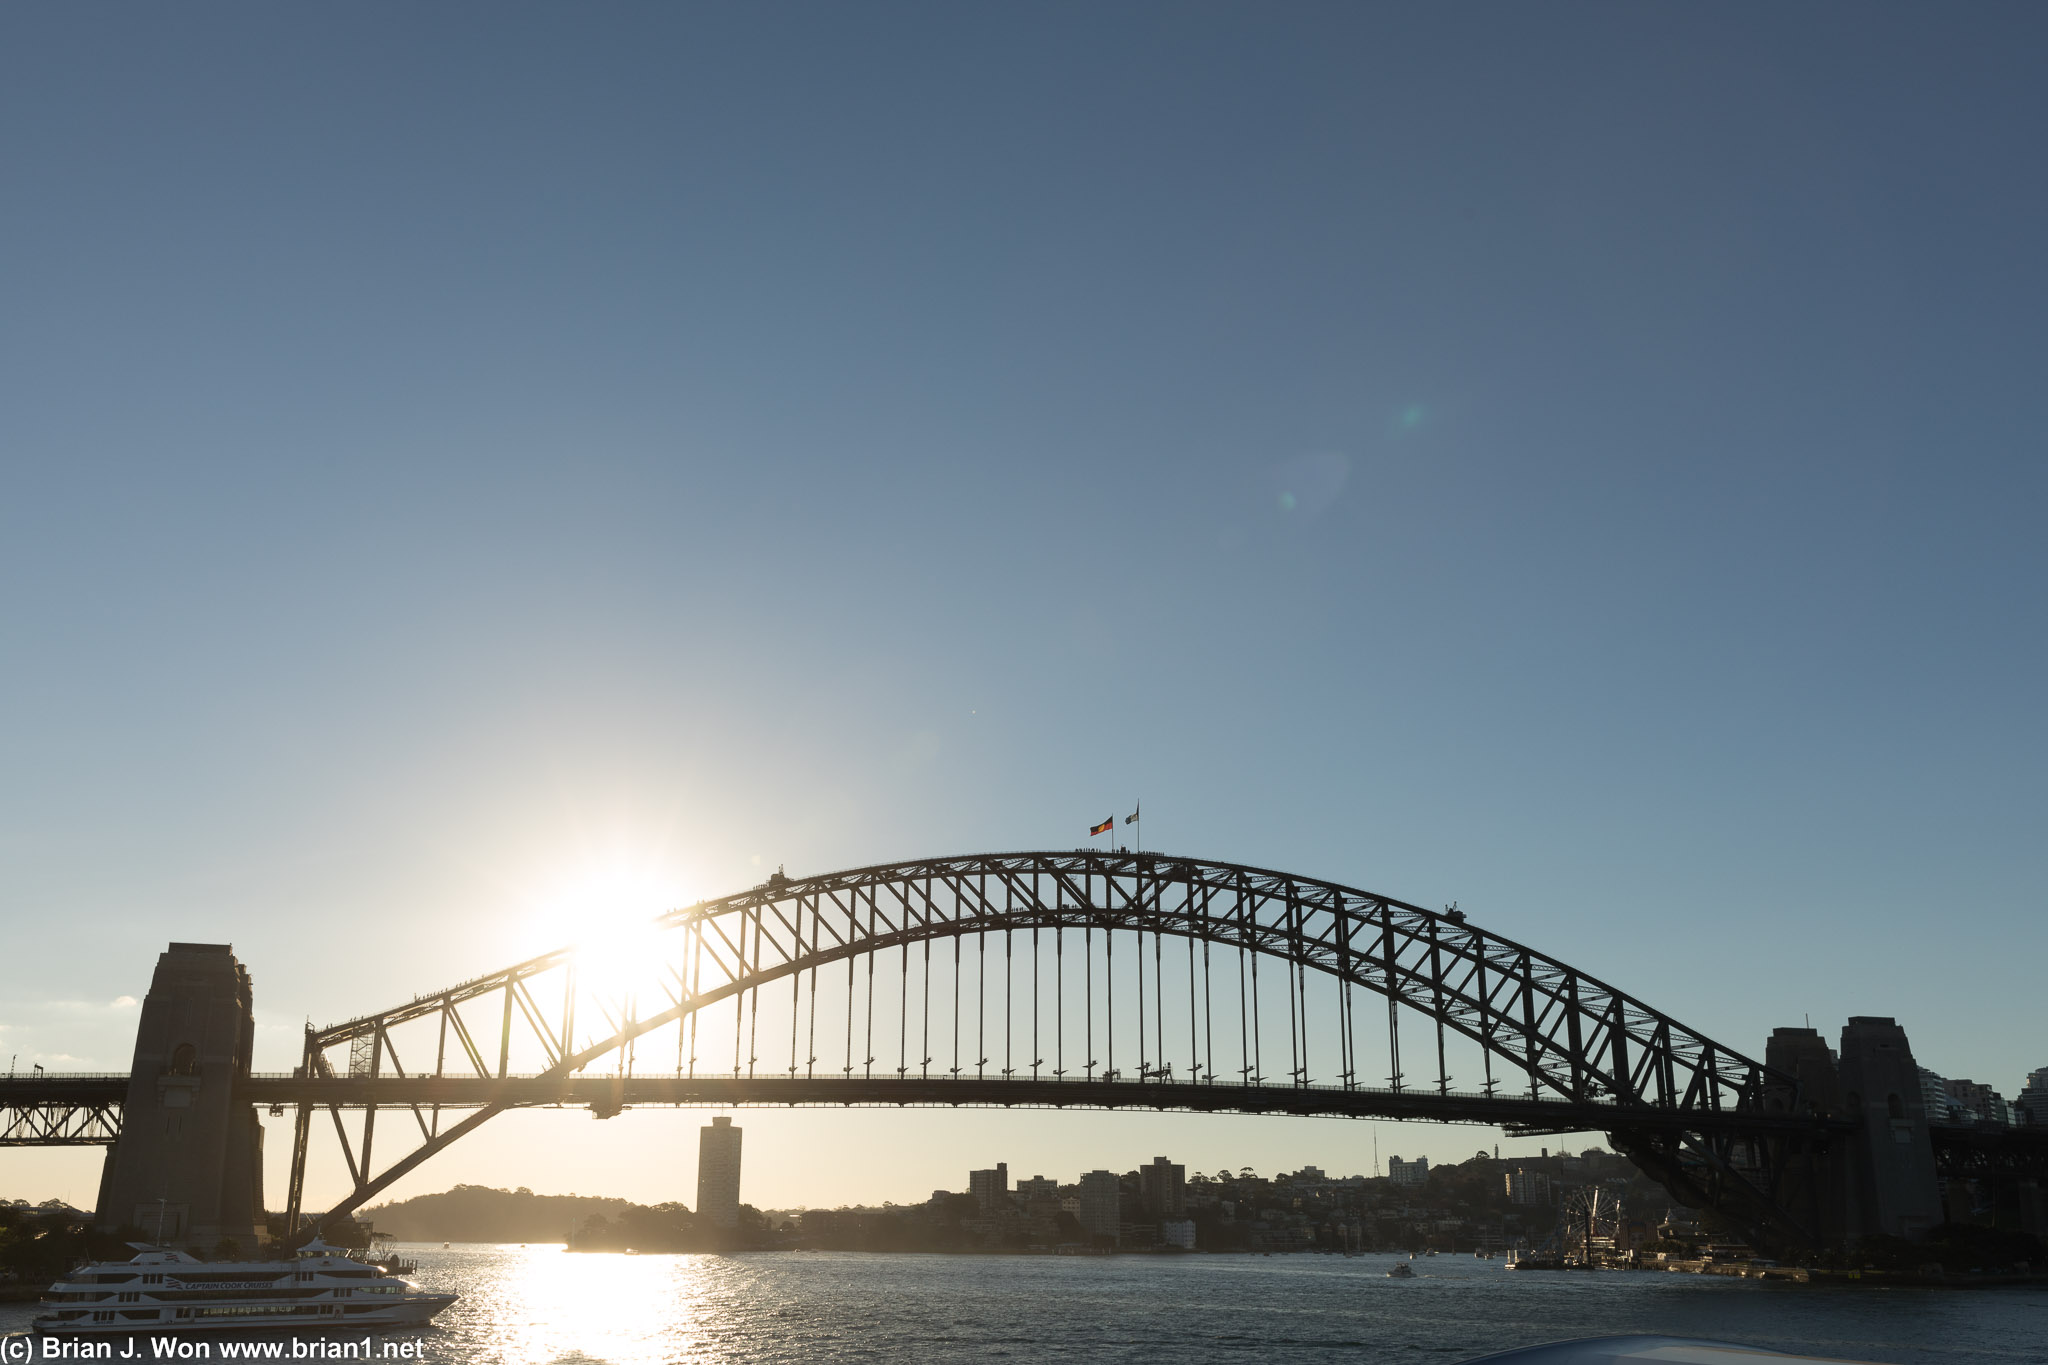 Sun aims low over Sydney Harbour Bridge.